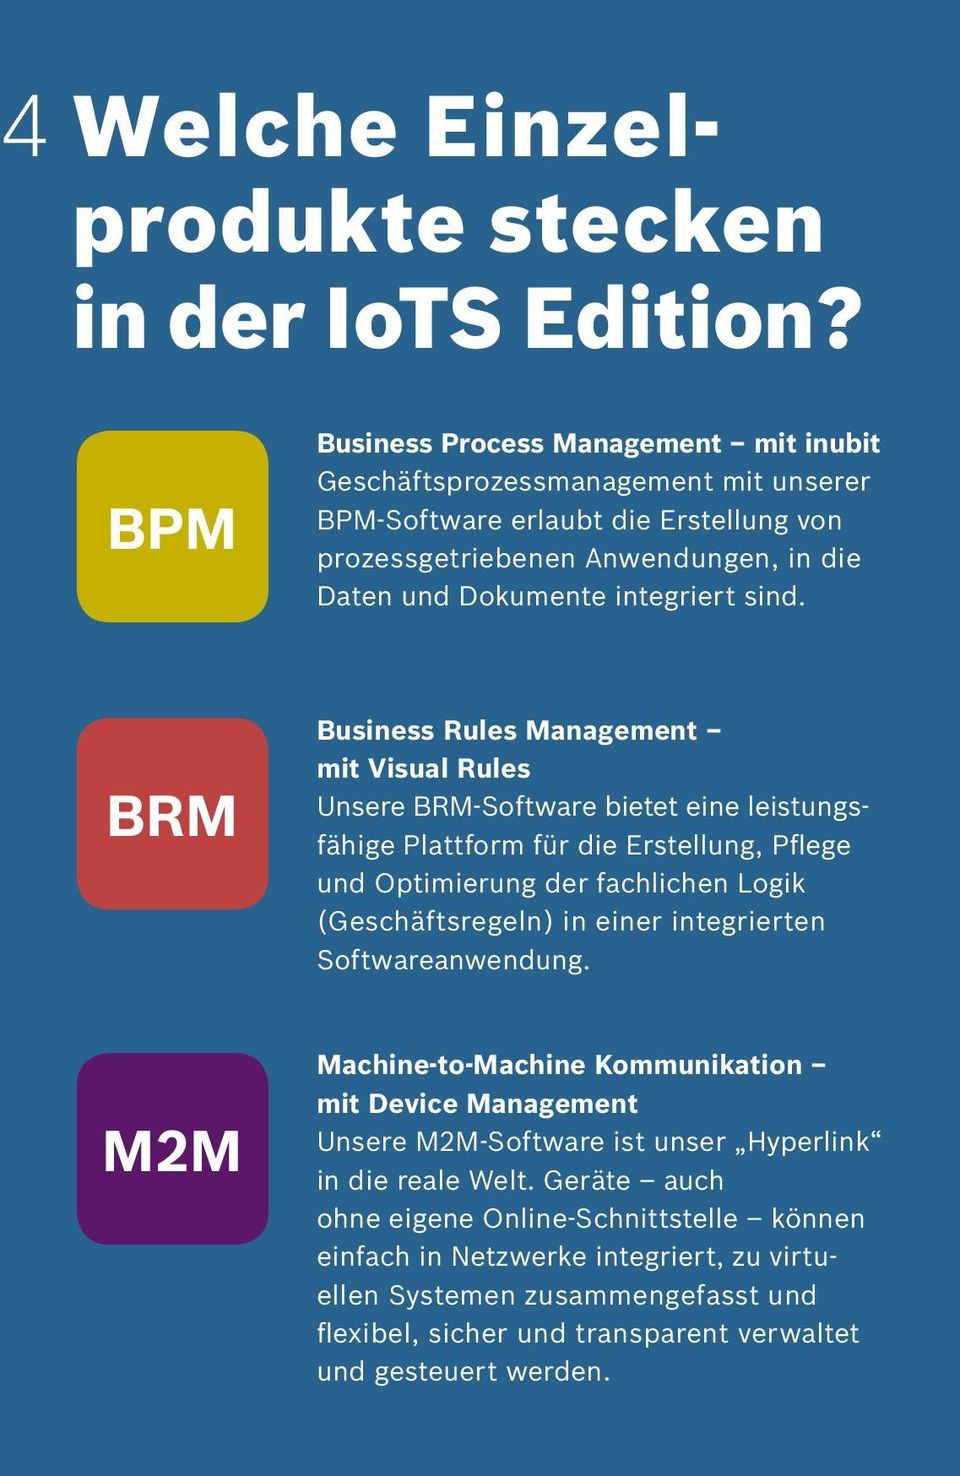 BRM Business Rules Management mit Visual Rules Unsere BRM-Software bietet eine leistungsfähige Plattform für die Erstellung, Pflege und Optimierung der fachlichen Logik (Geschäftsregeln) in einer